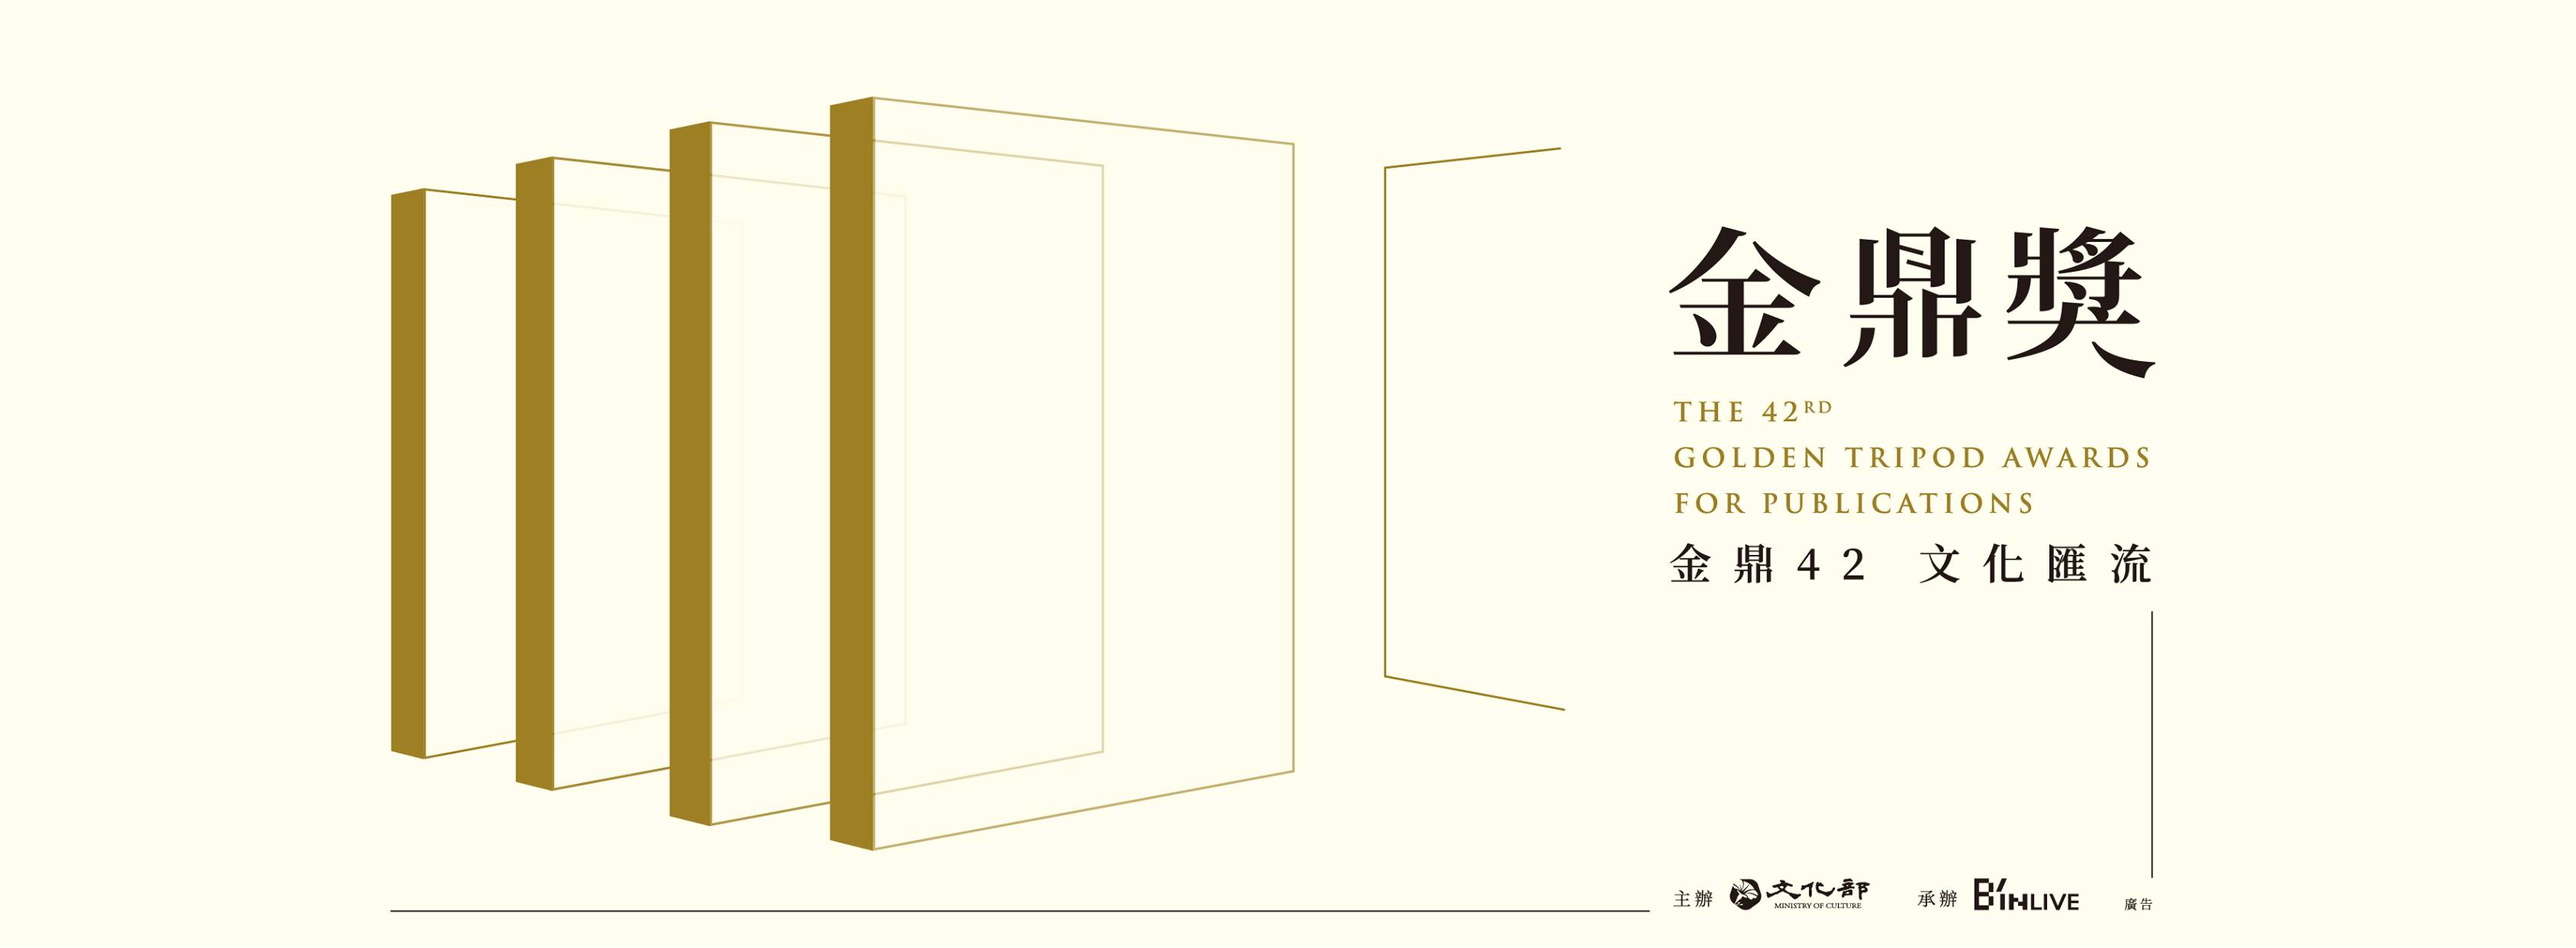 Golden Tripod to honor Chiu Ko editor for publishing contributions